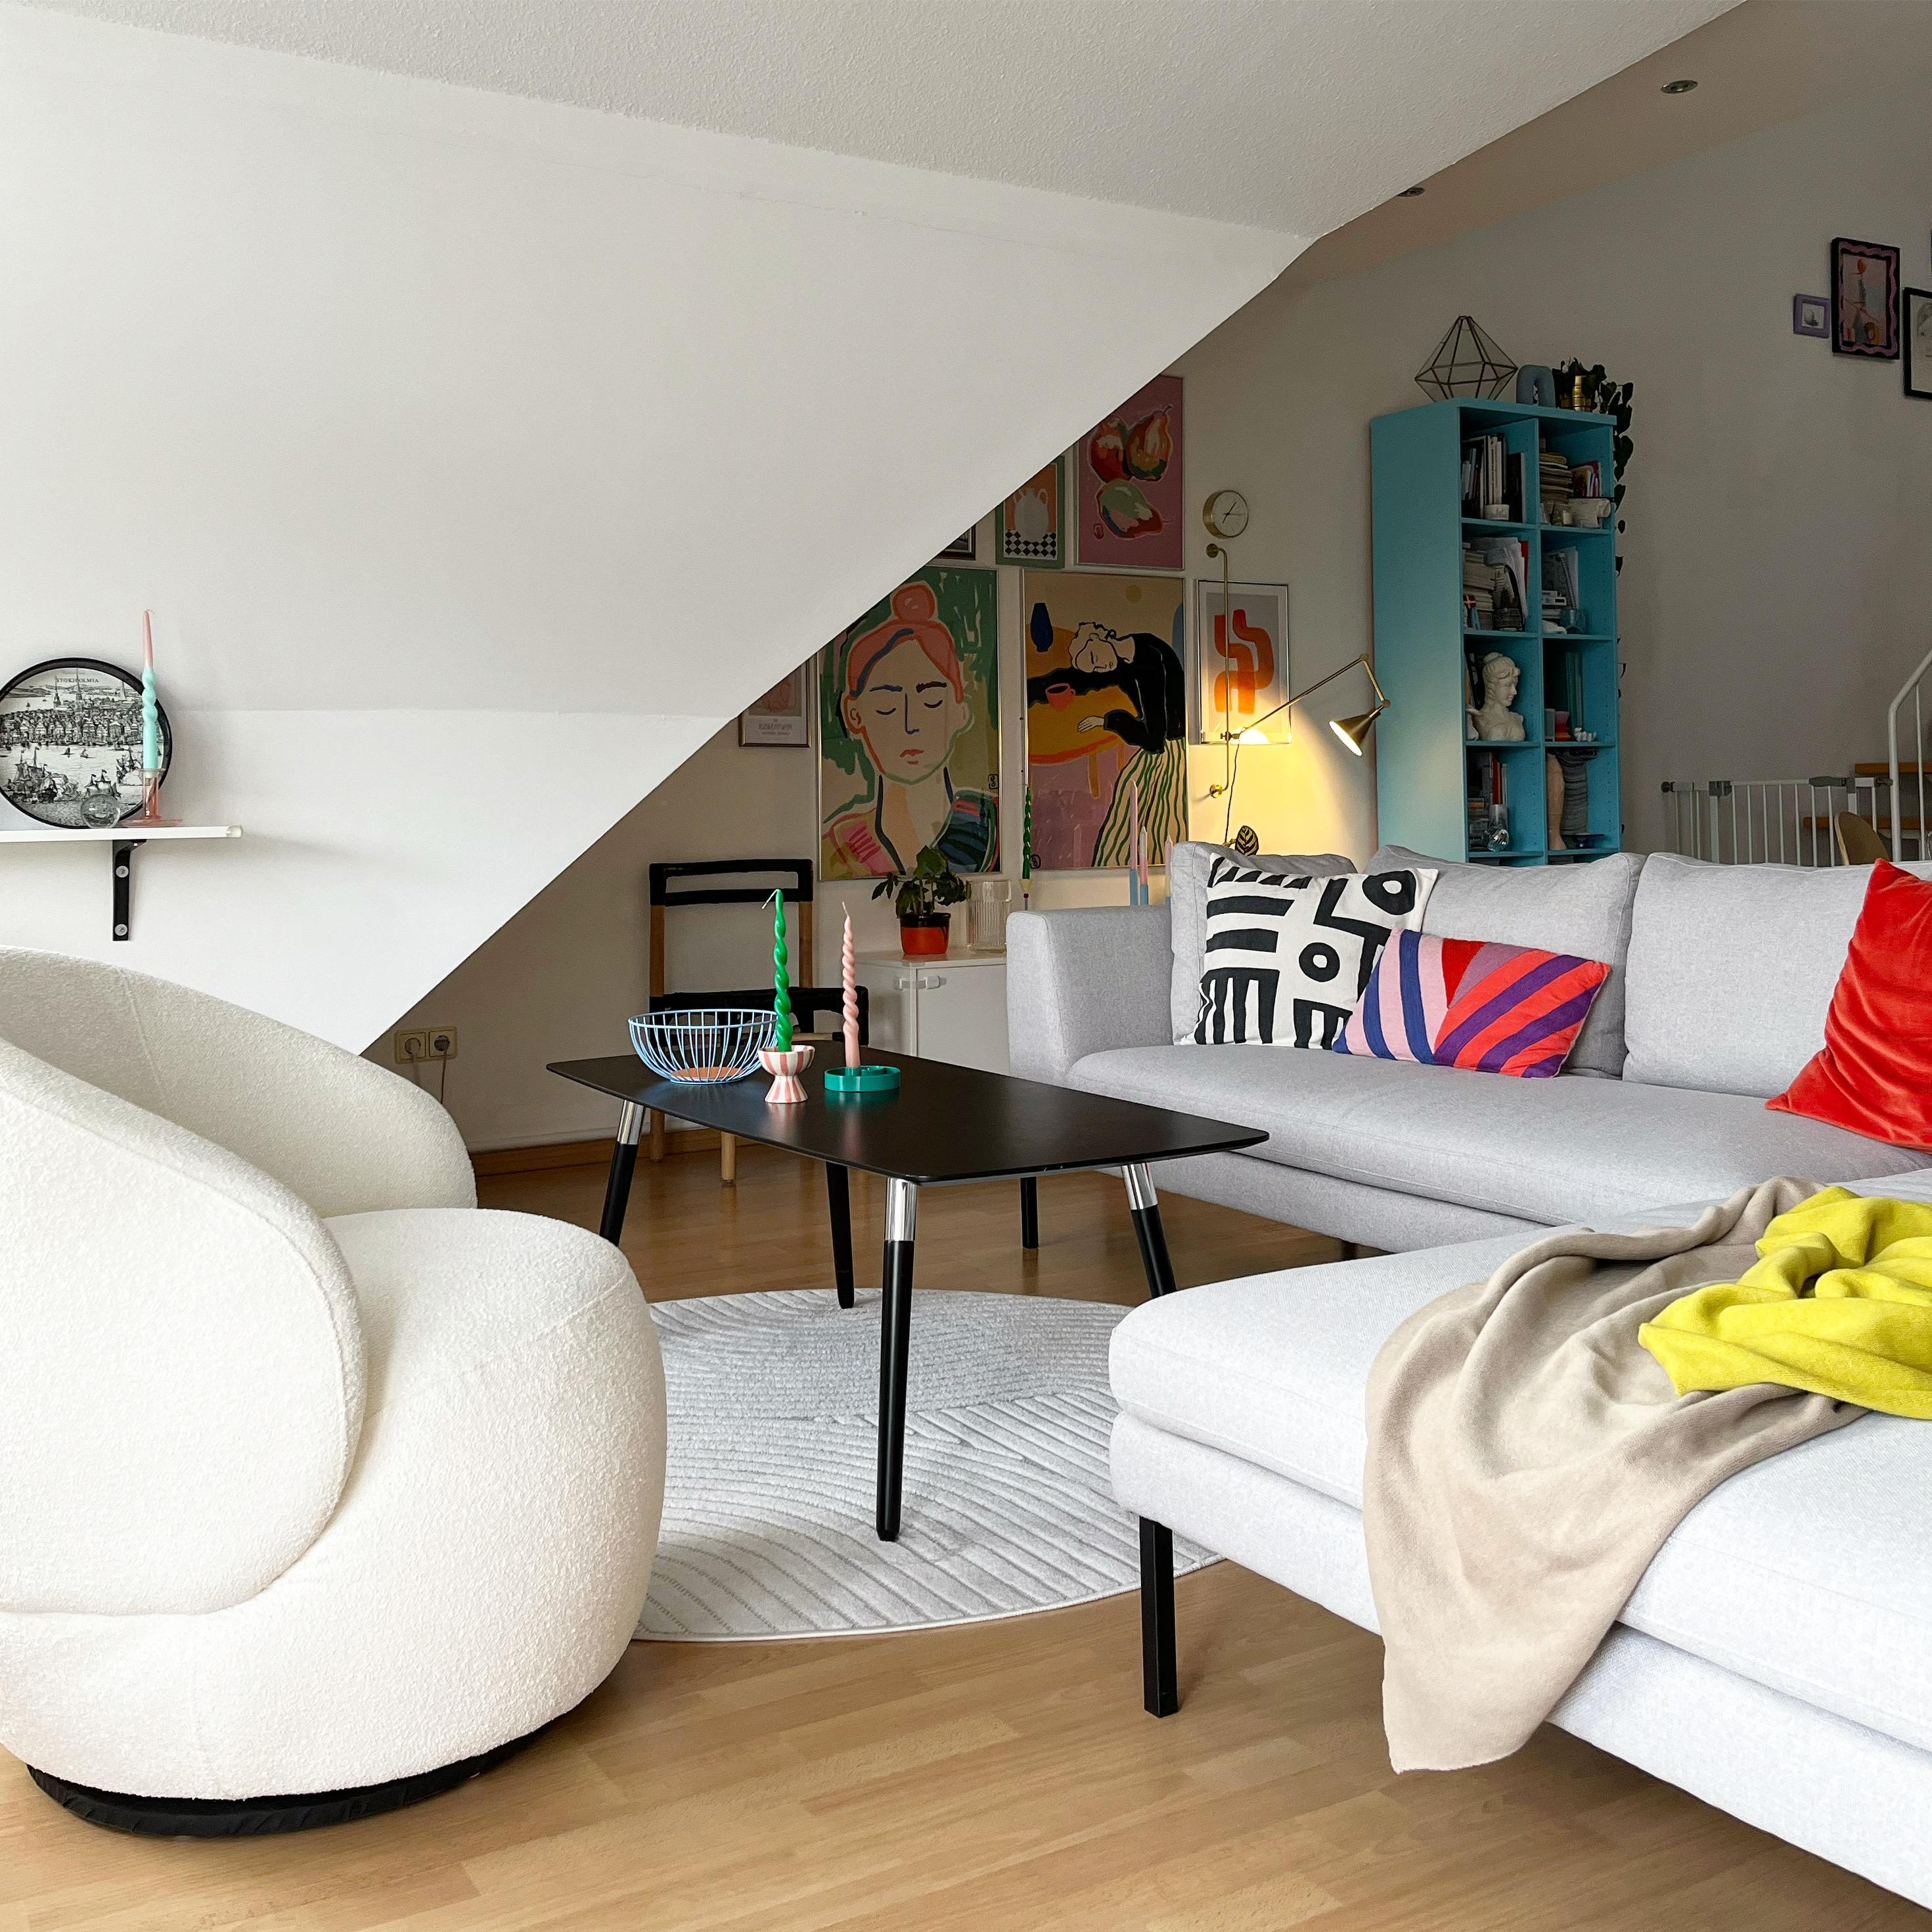 Ein neuer Sessel ist eingezogen 🤍
#wohnzimmer #sessel #cosyhome #couchstyle #gemütlicheszuhause